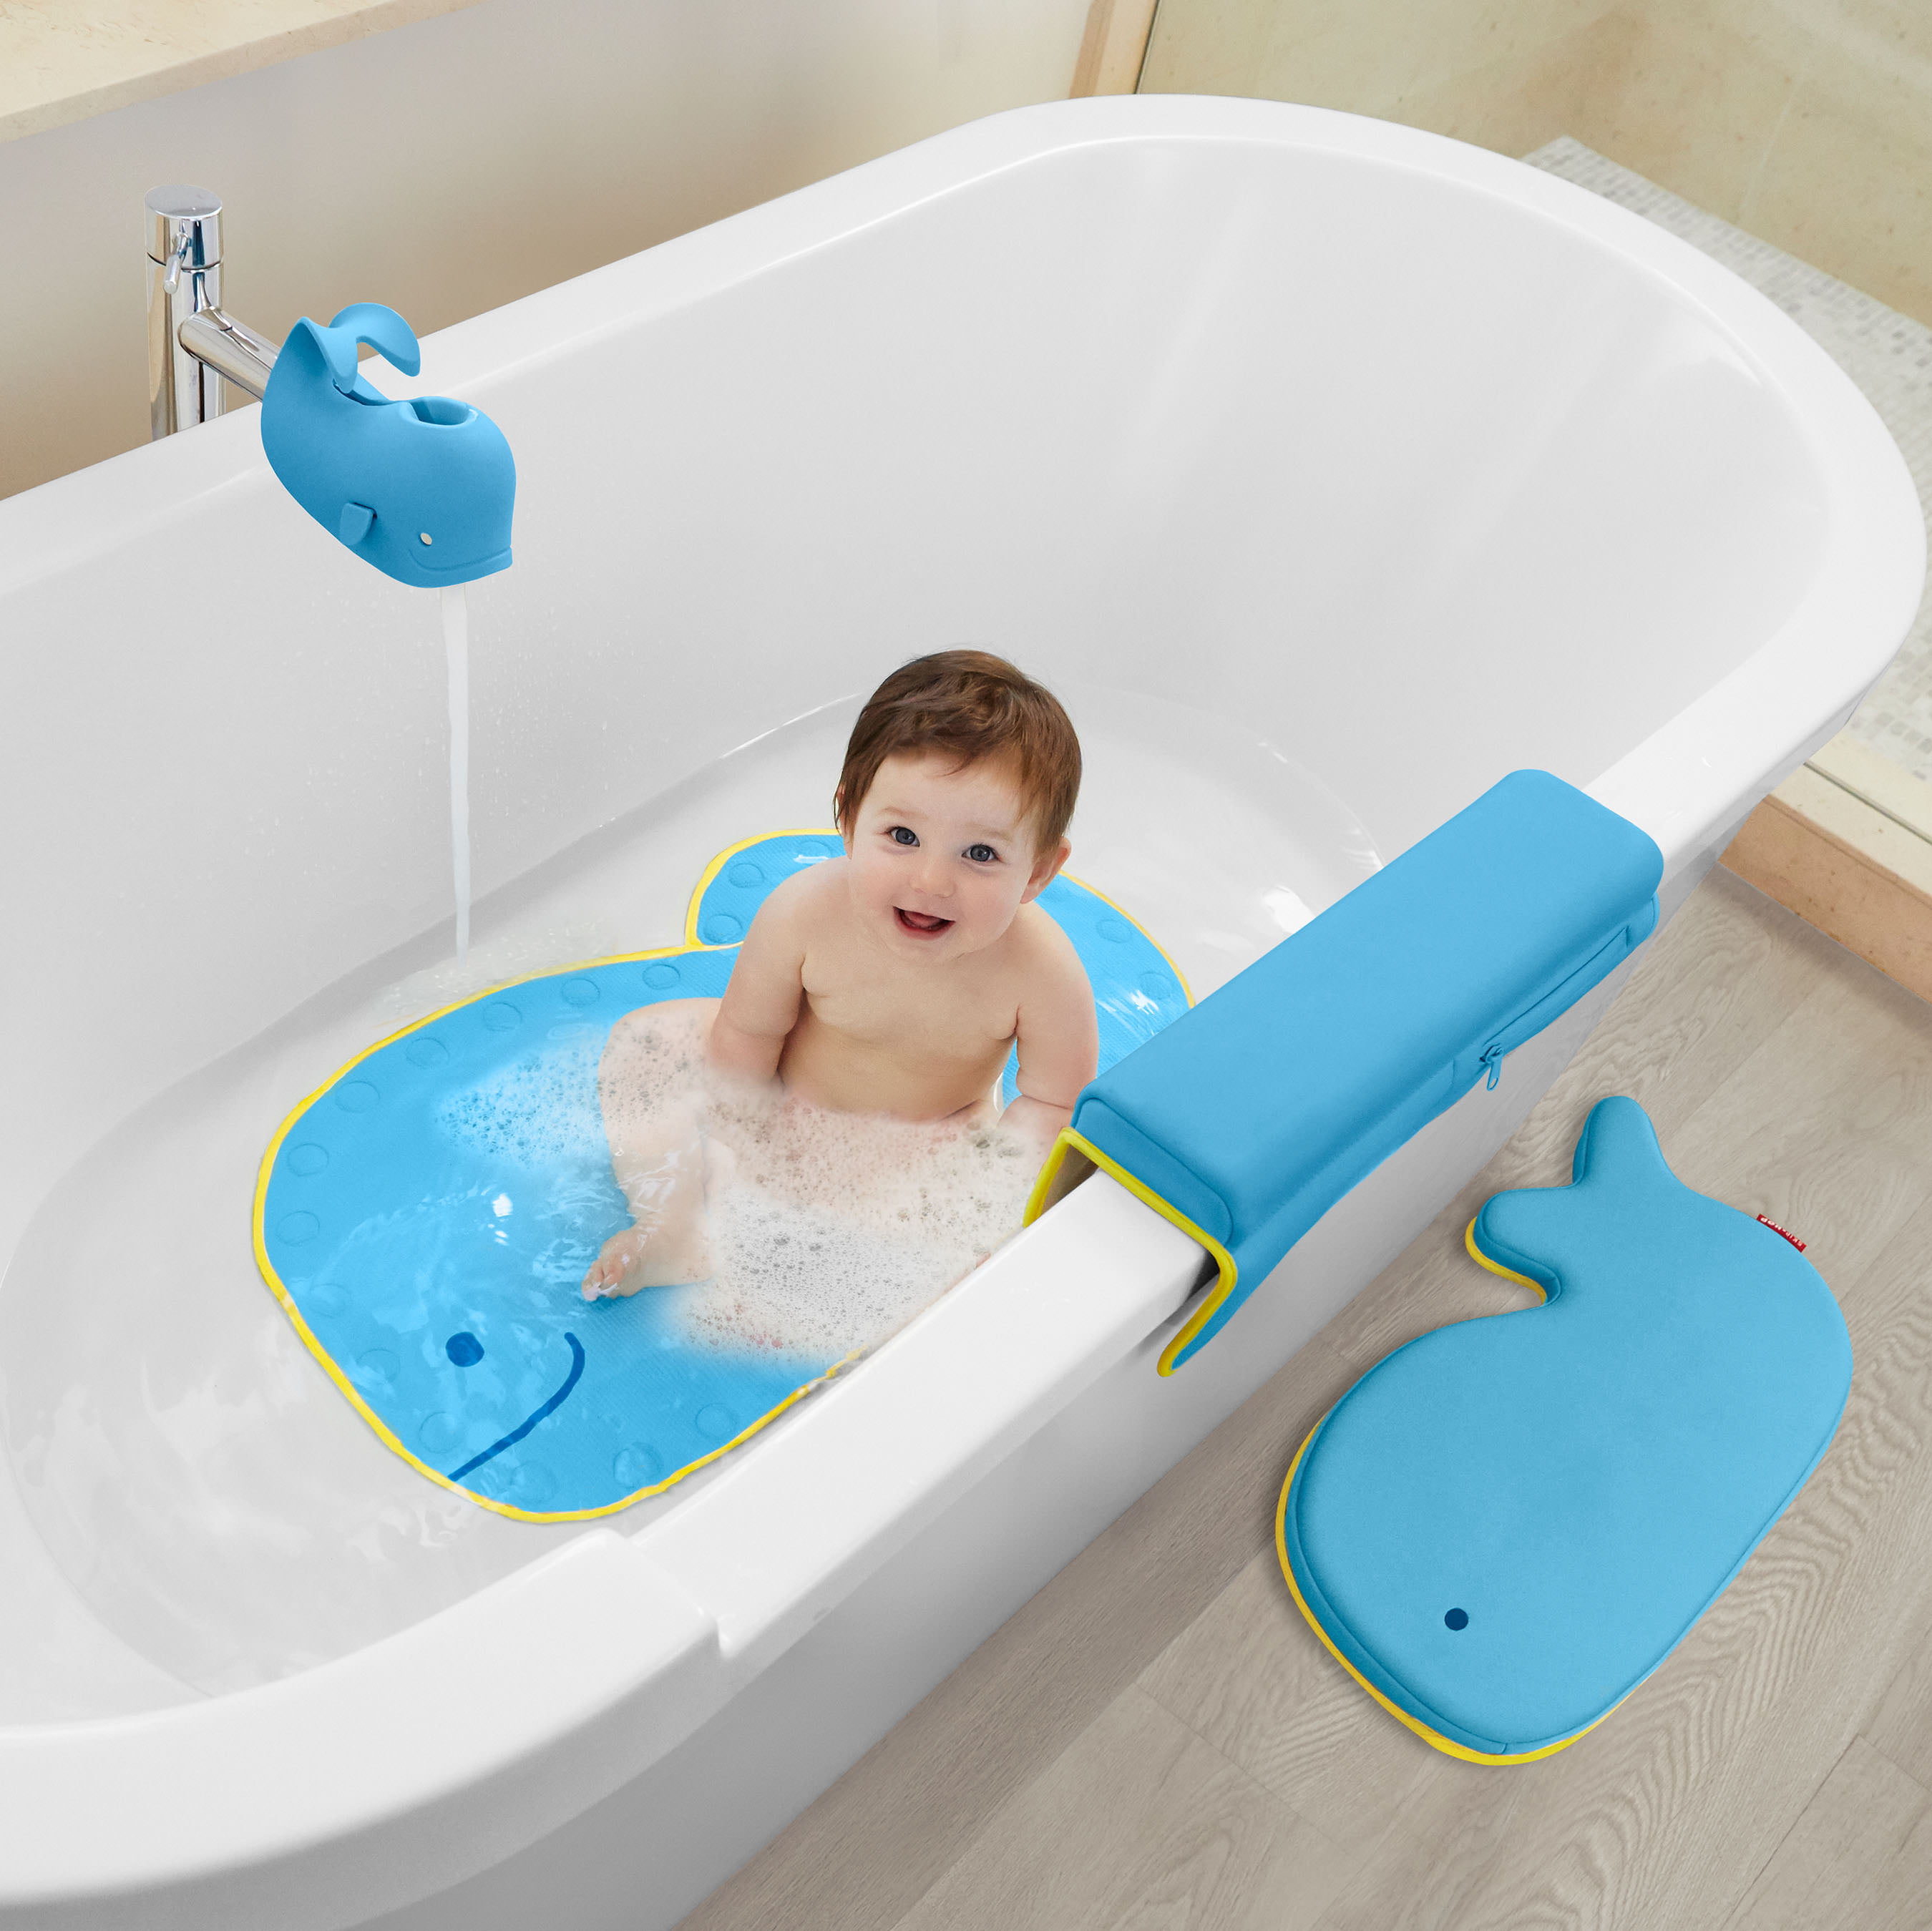 Shelfie bathtub tray for safer play - Savvy Sassy Moms